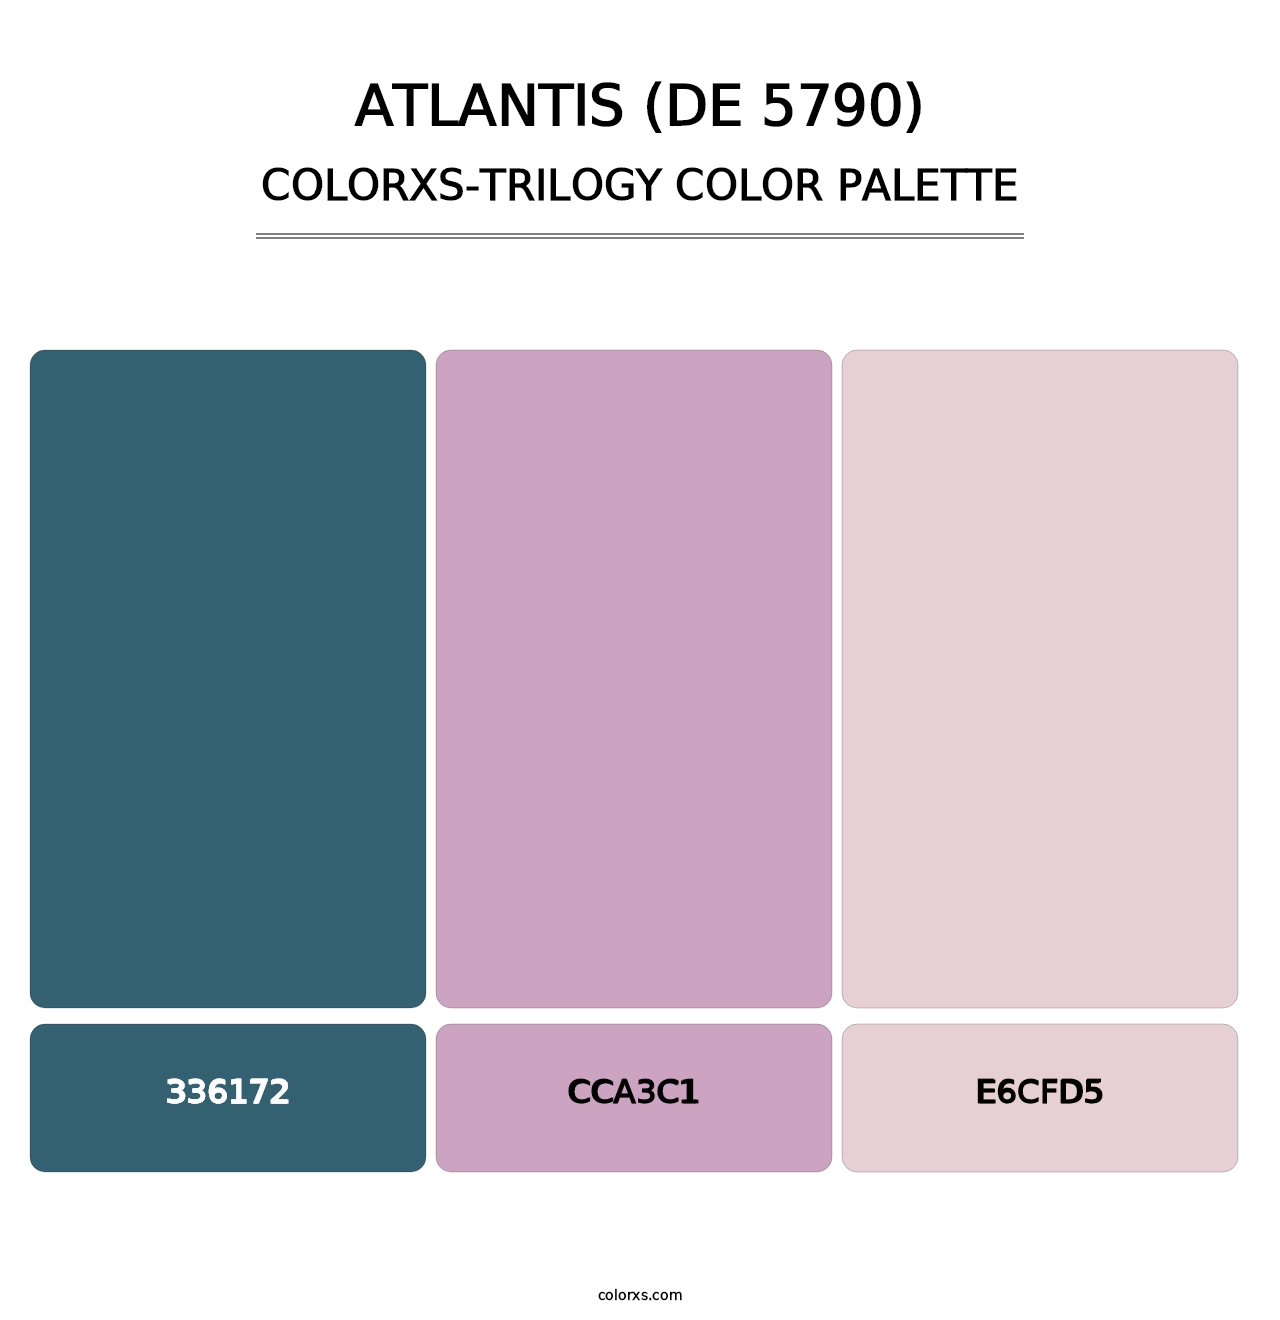 Atlantis (DE 5790) - Colorxs Trilogy Palette